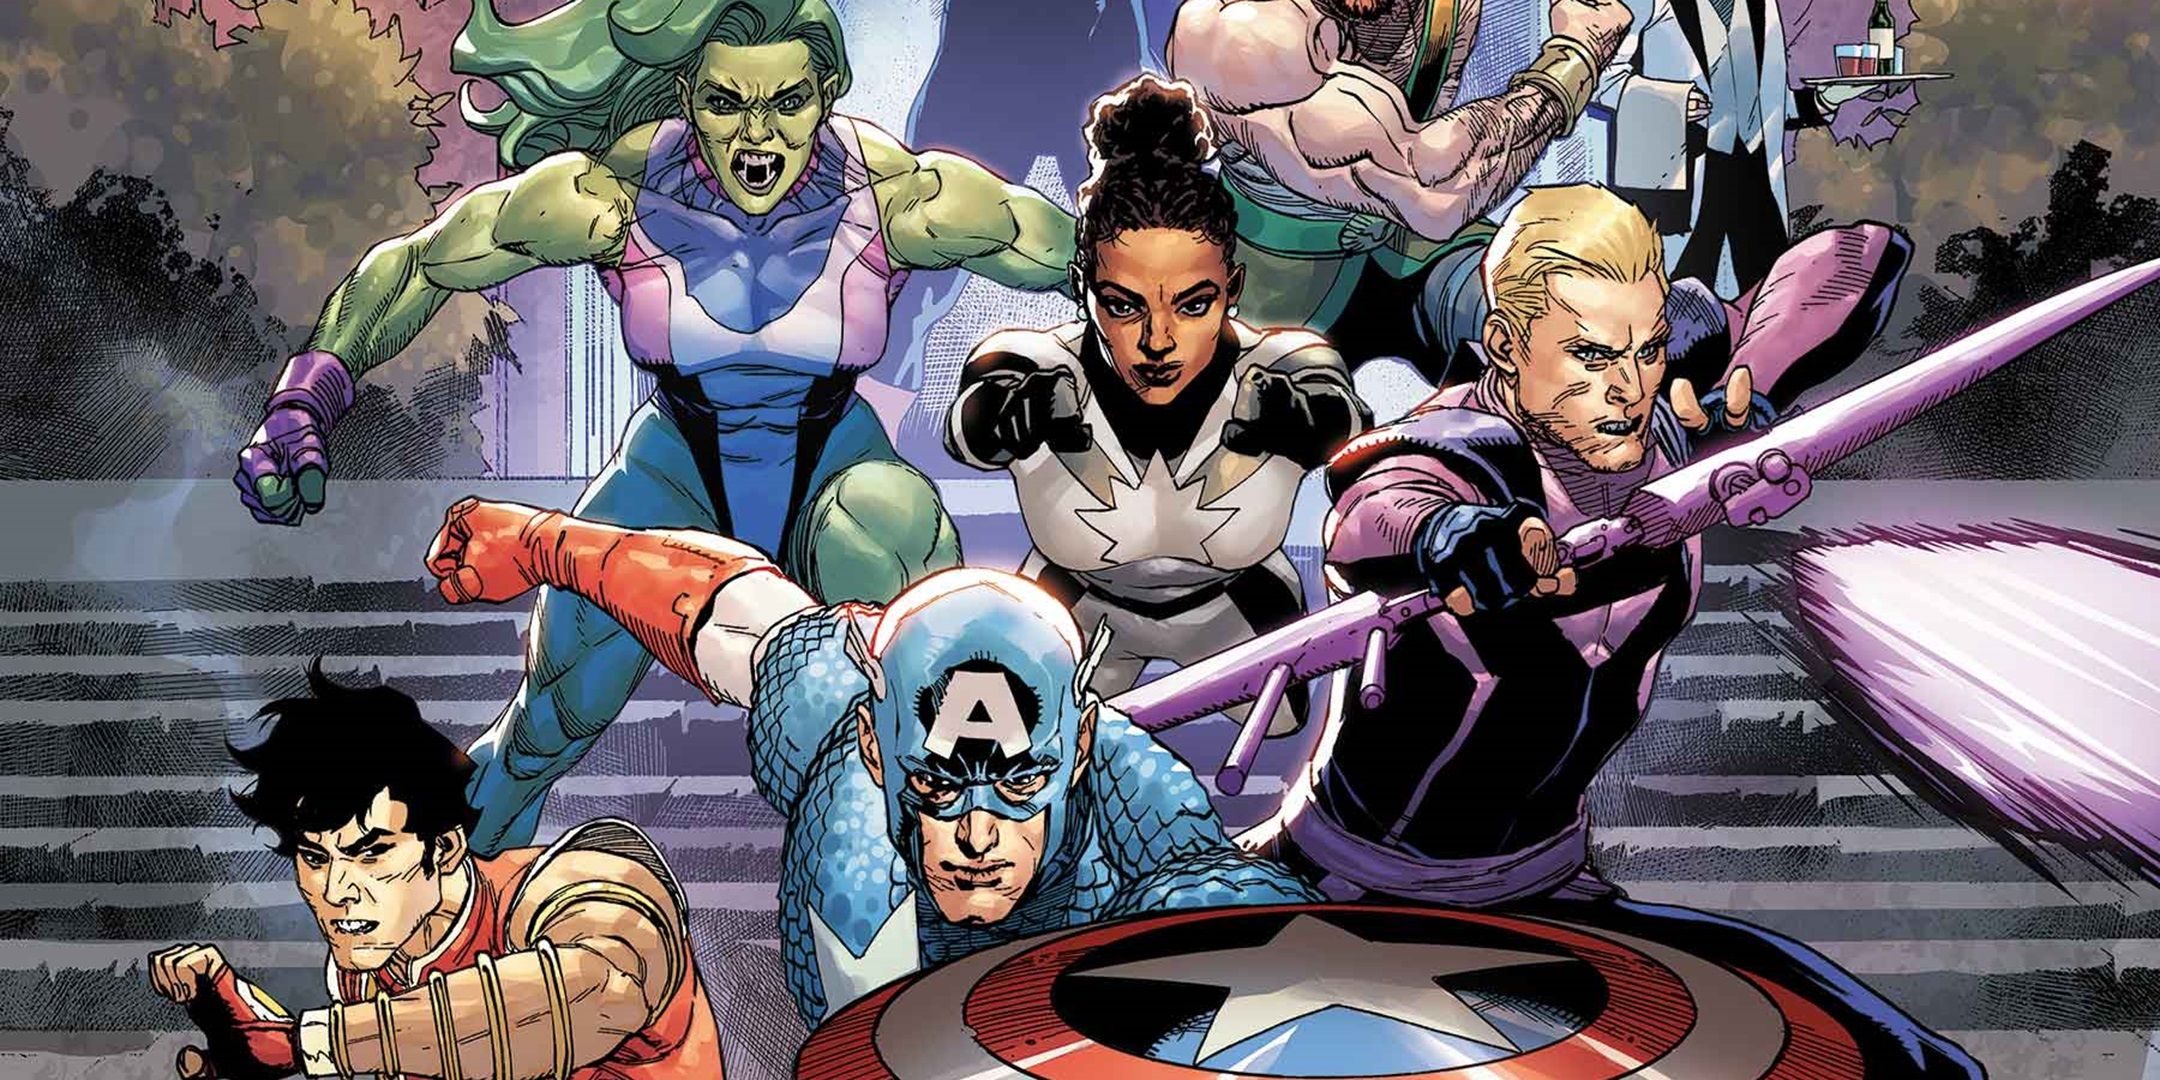 The brand-new Avengers team